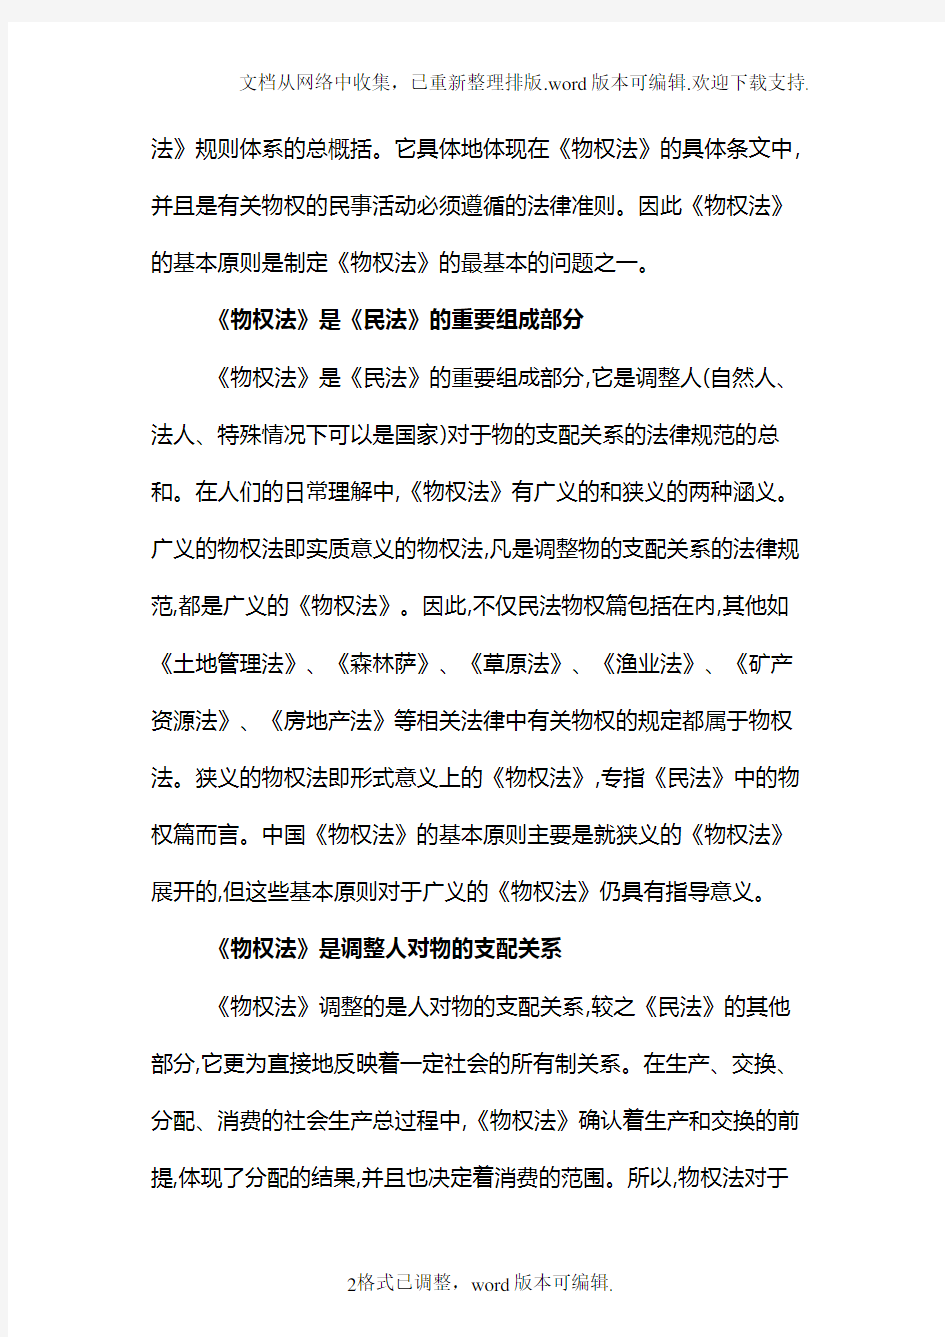 中国制定物权法的基本原则和政策导向